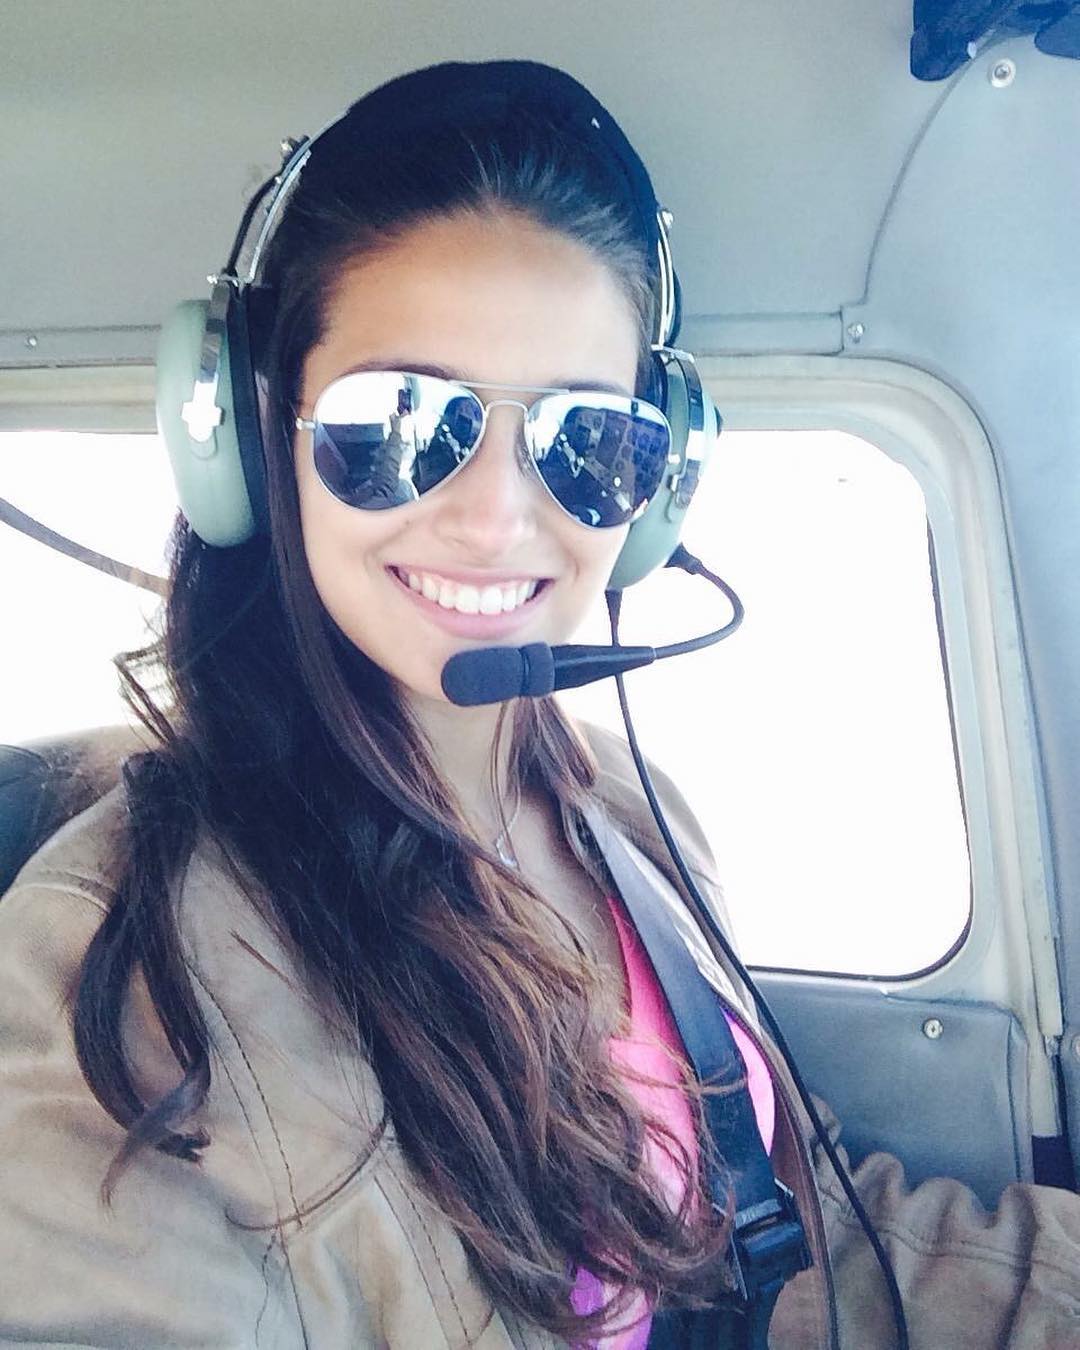 Profile ‘cực chất’ của tân Miss Charm 2023: Từng tốt nghiệp khóa đào tạo phi công ở Mỹ, thông thạo nhiều ngôn ngữ và sở hữu body siêu nóng bỏng - Ảnh 7.